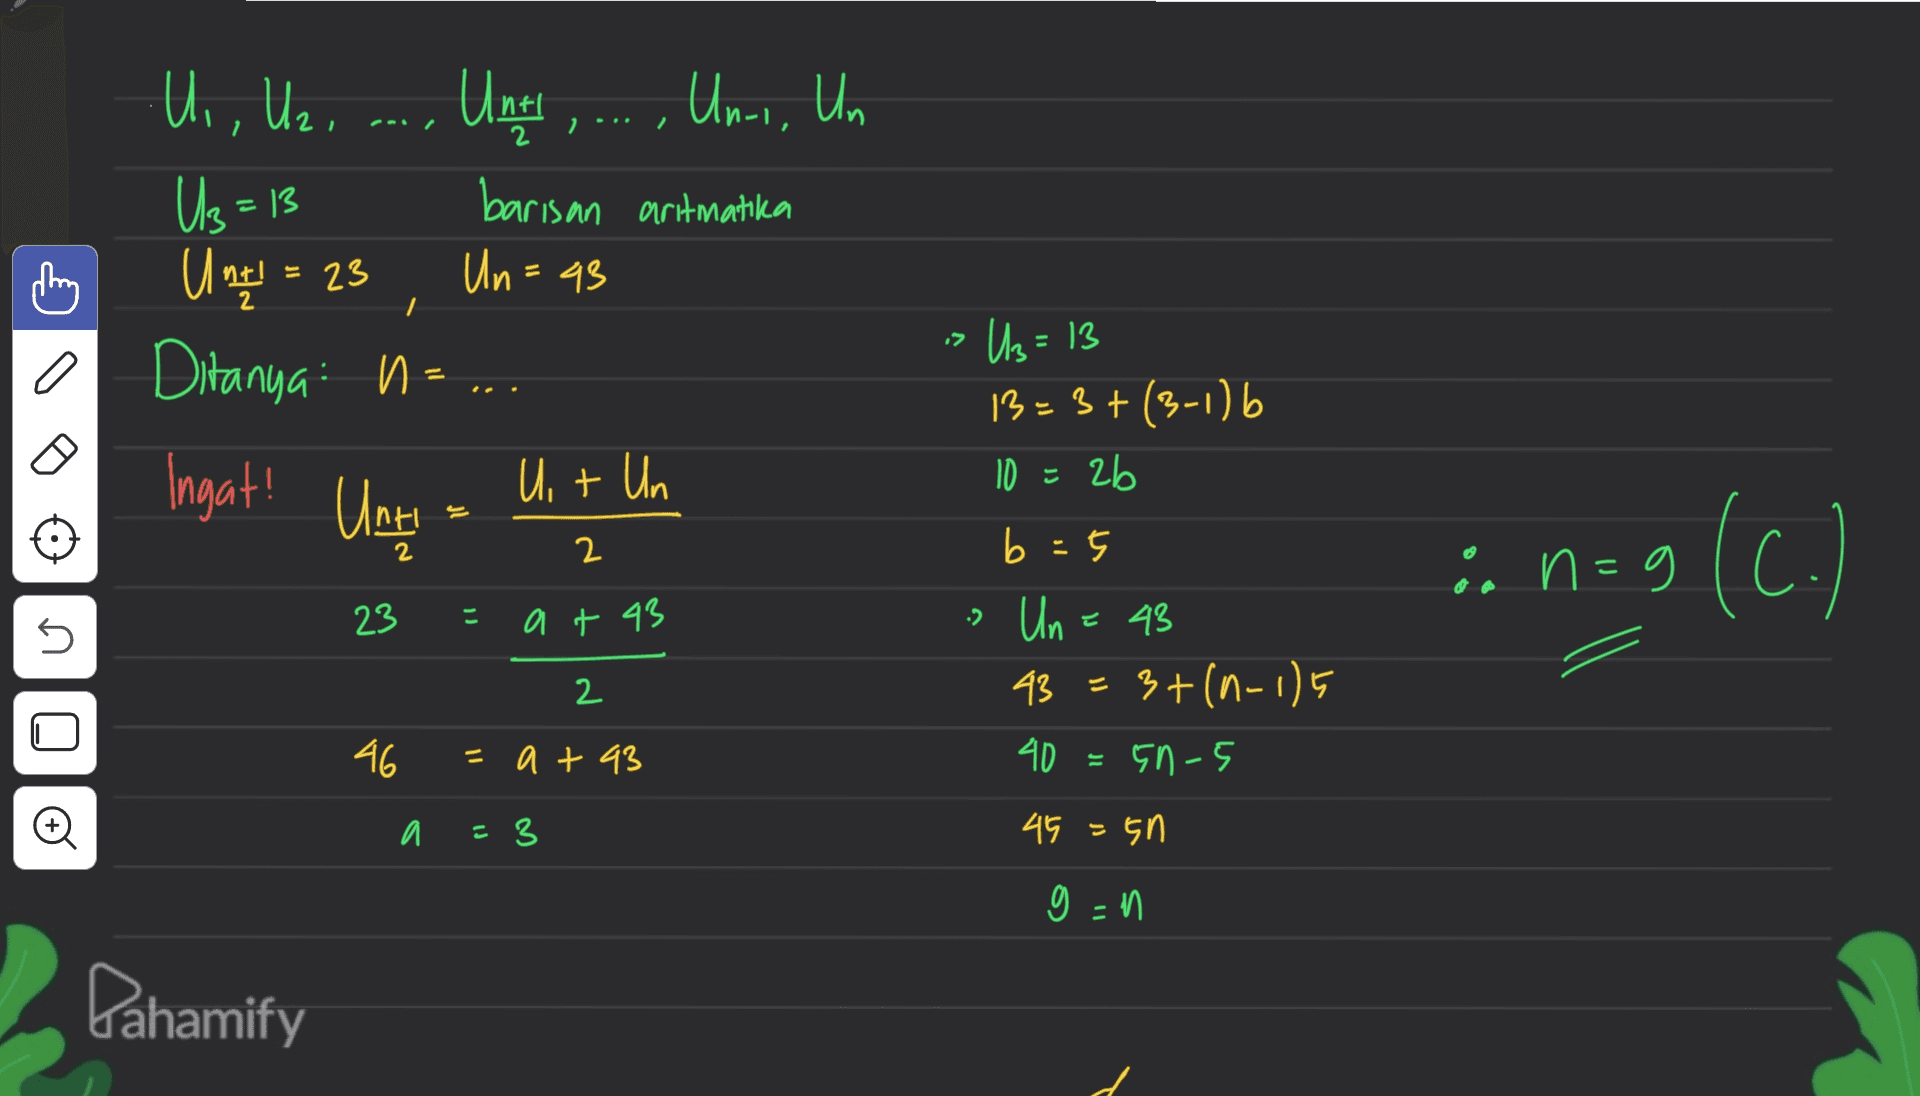 U,, U2, Untt ,...,' , ..., Uni, Un = Us - 13 = U t = 23 Ditanya n barisan artmatika Un=43 לו Us=13 = Ingat! Until U + Un 2 2 13=3+(3-1) 6 10 = 2b b = 5 Un = 48 43=3+(n-1)5 3+ 40 En-5 in n=9 9 (C.) 23 こ 2 U at 43 2 U 46 = a +93 = a =3 45 =50 g=n Pahamify 